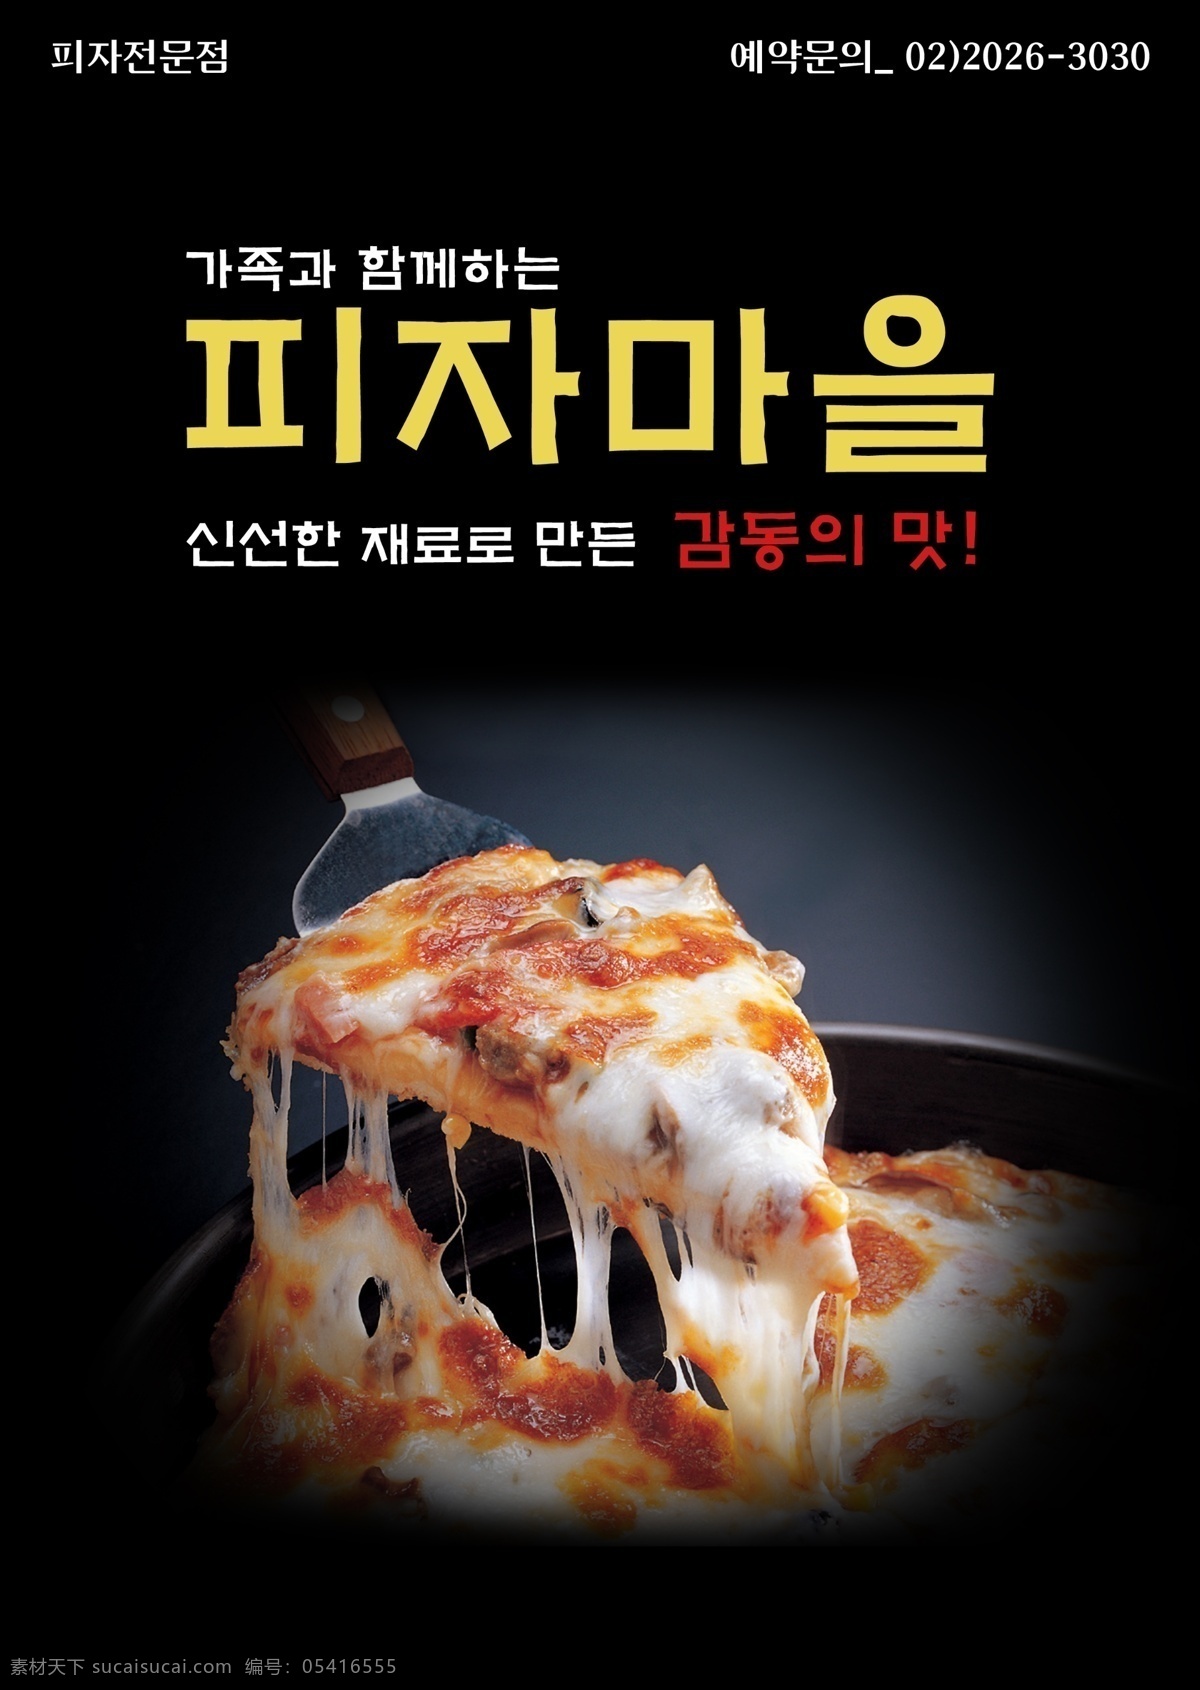 韩式 美食 披萨 招贴 ps 海报 招贴设计